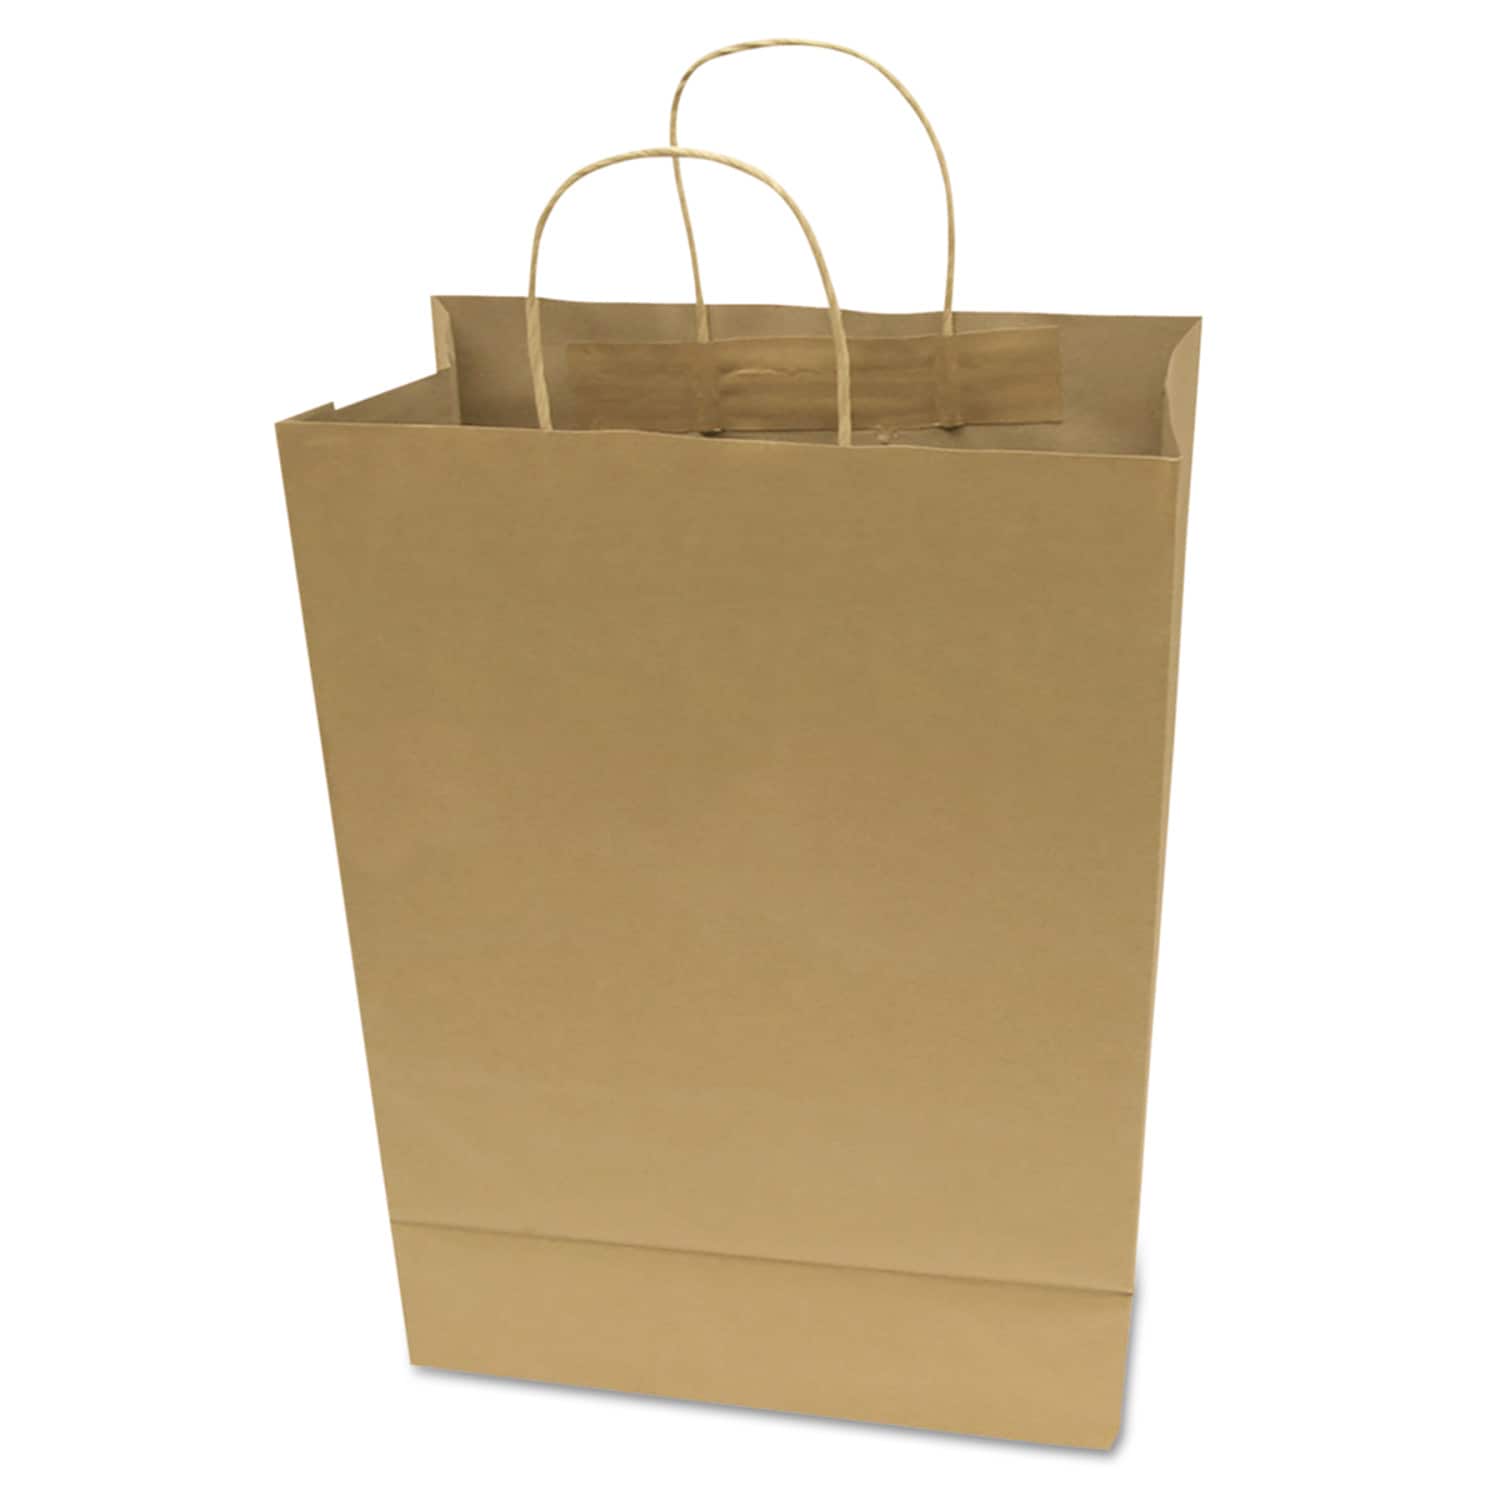 Cosco Premium Shopping Bag, 10-in x 13-in, Brown Kraft, 50/Box in